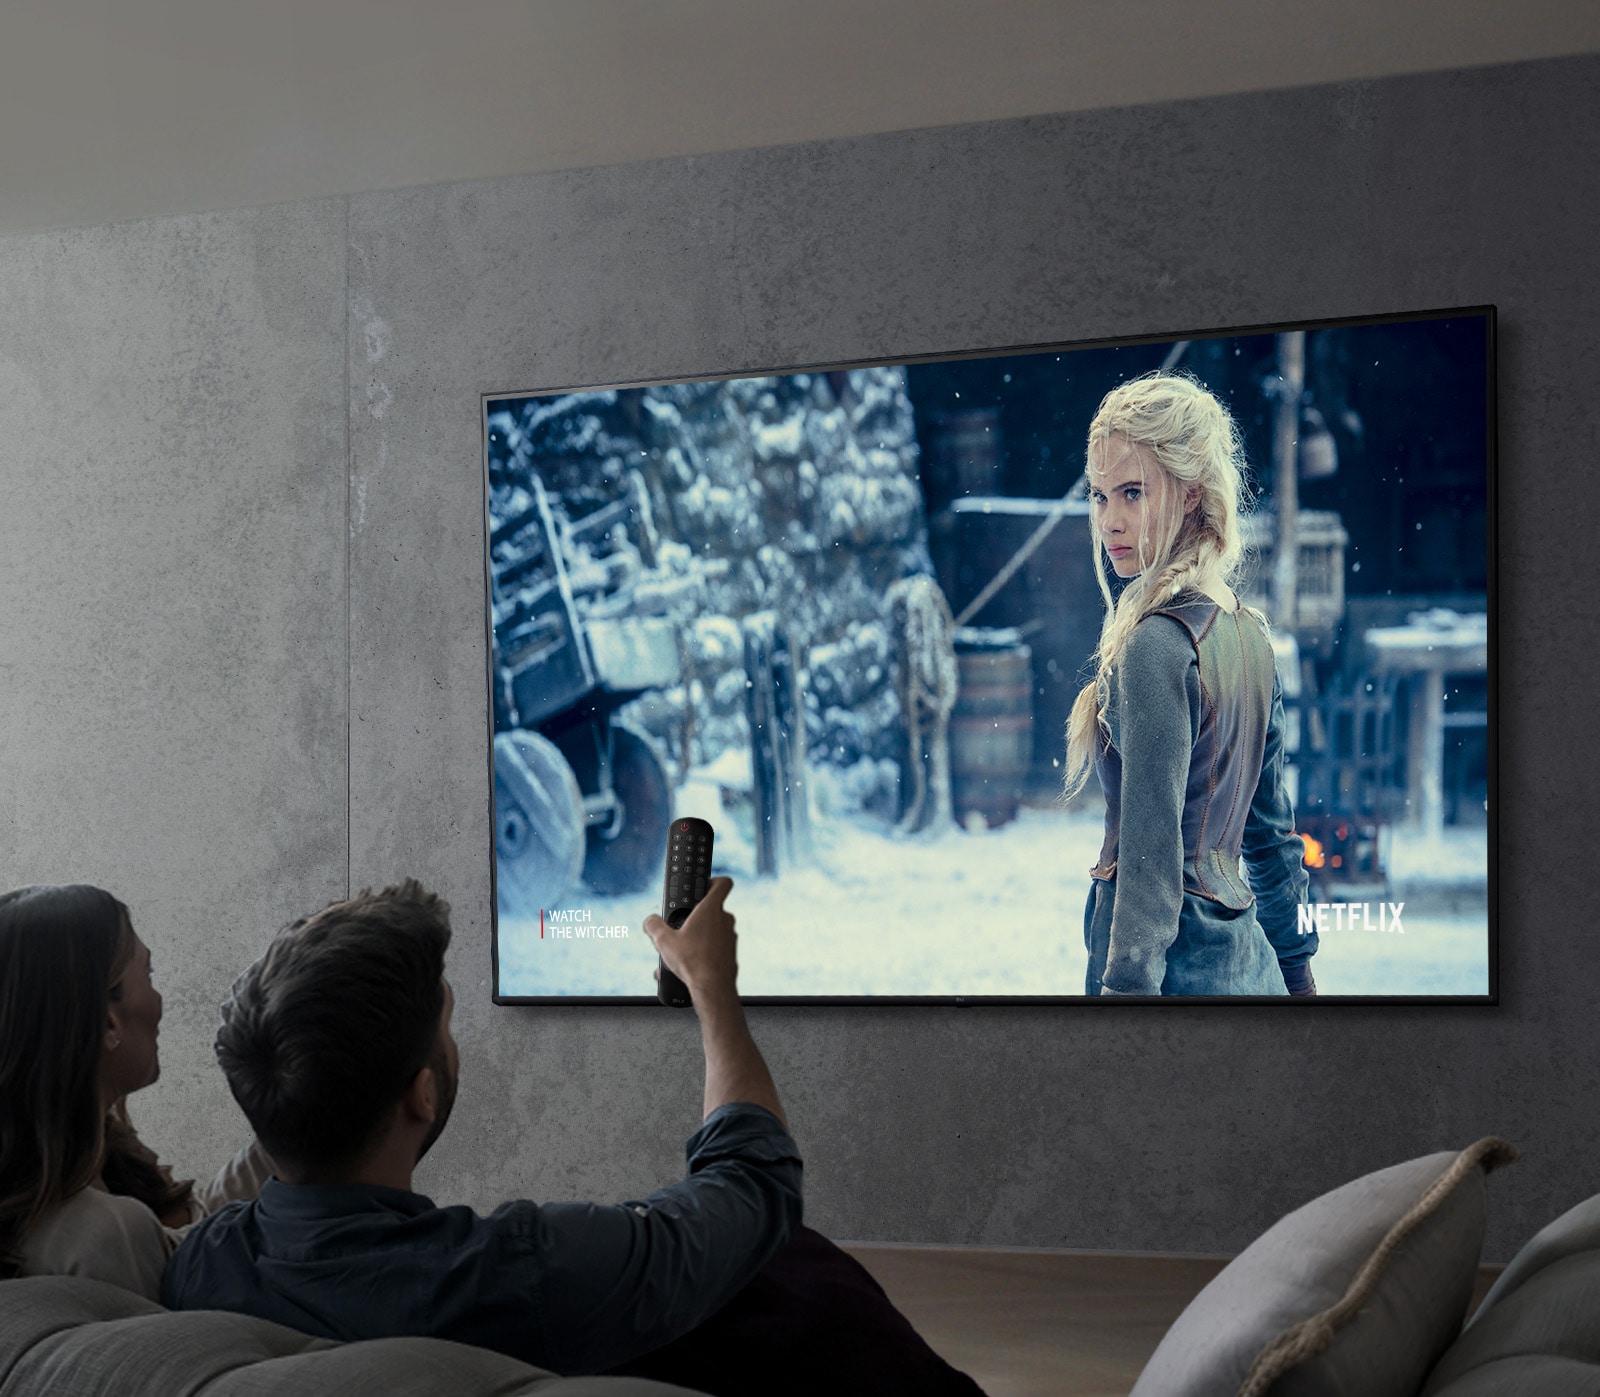 Slika na kojoj se prikazuje par koji gleda seriju na televizoru LG UHD.